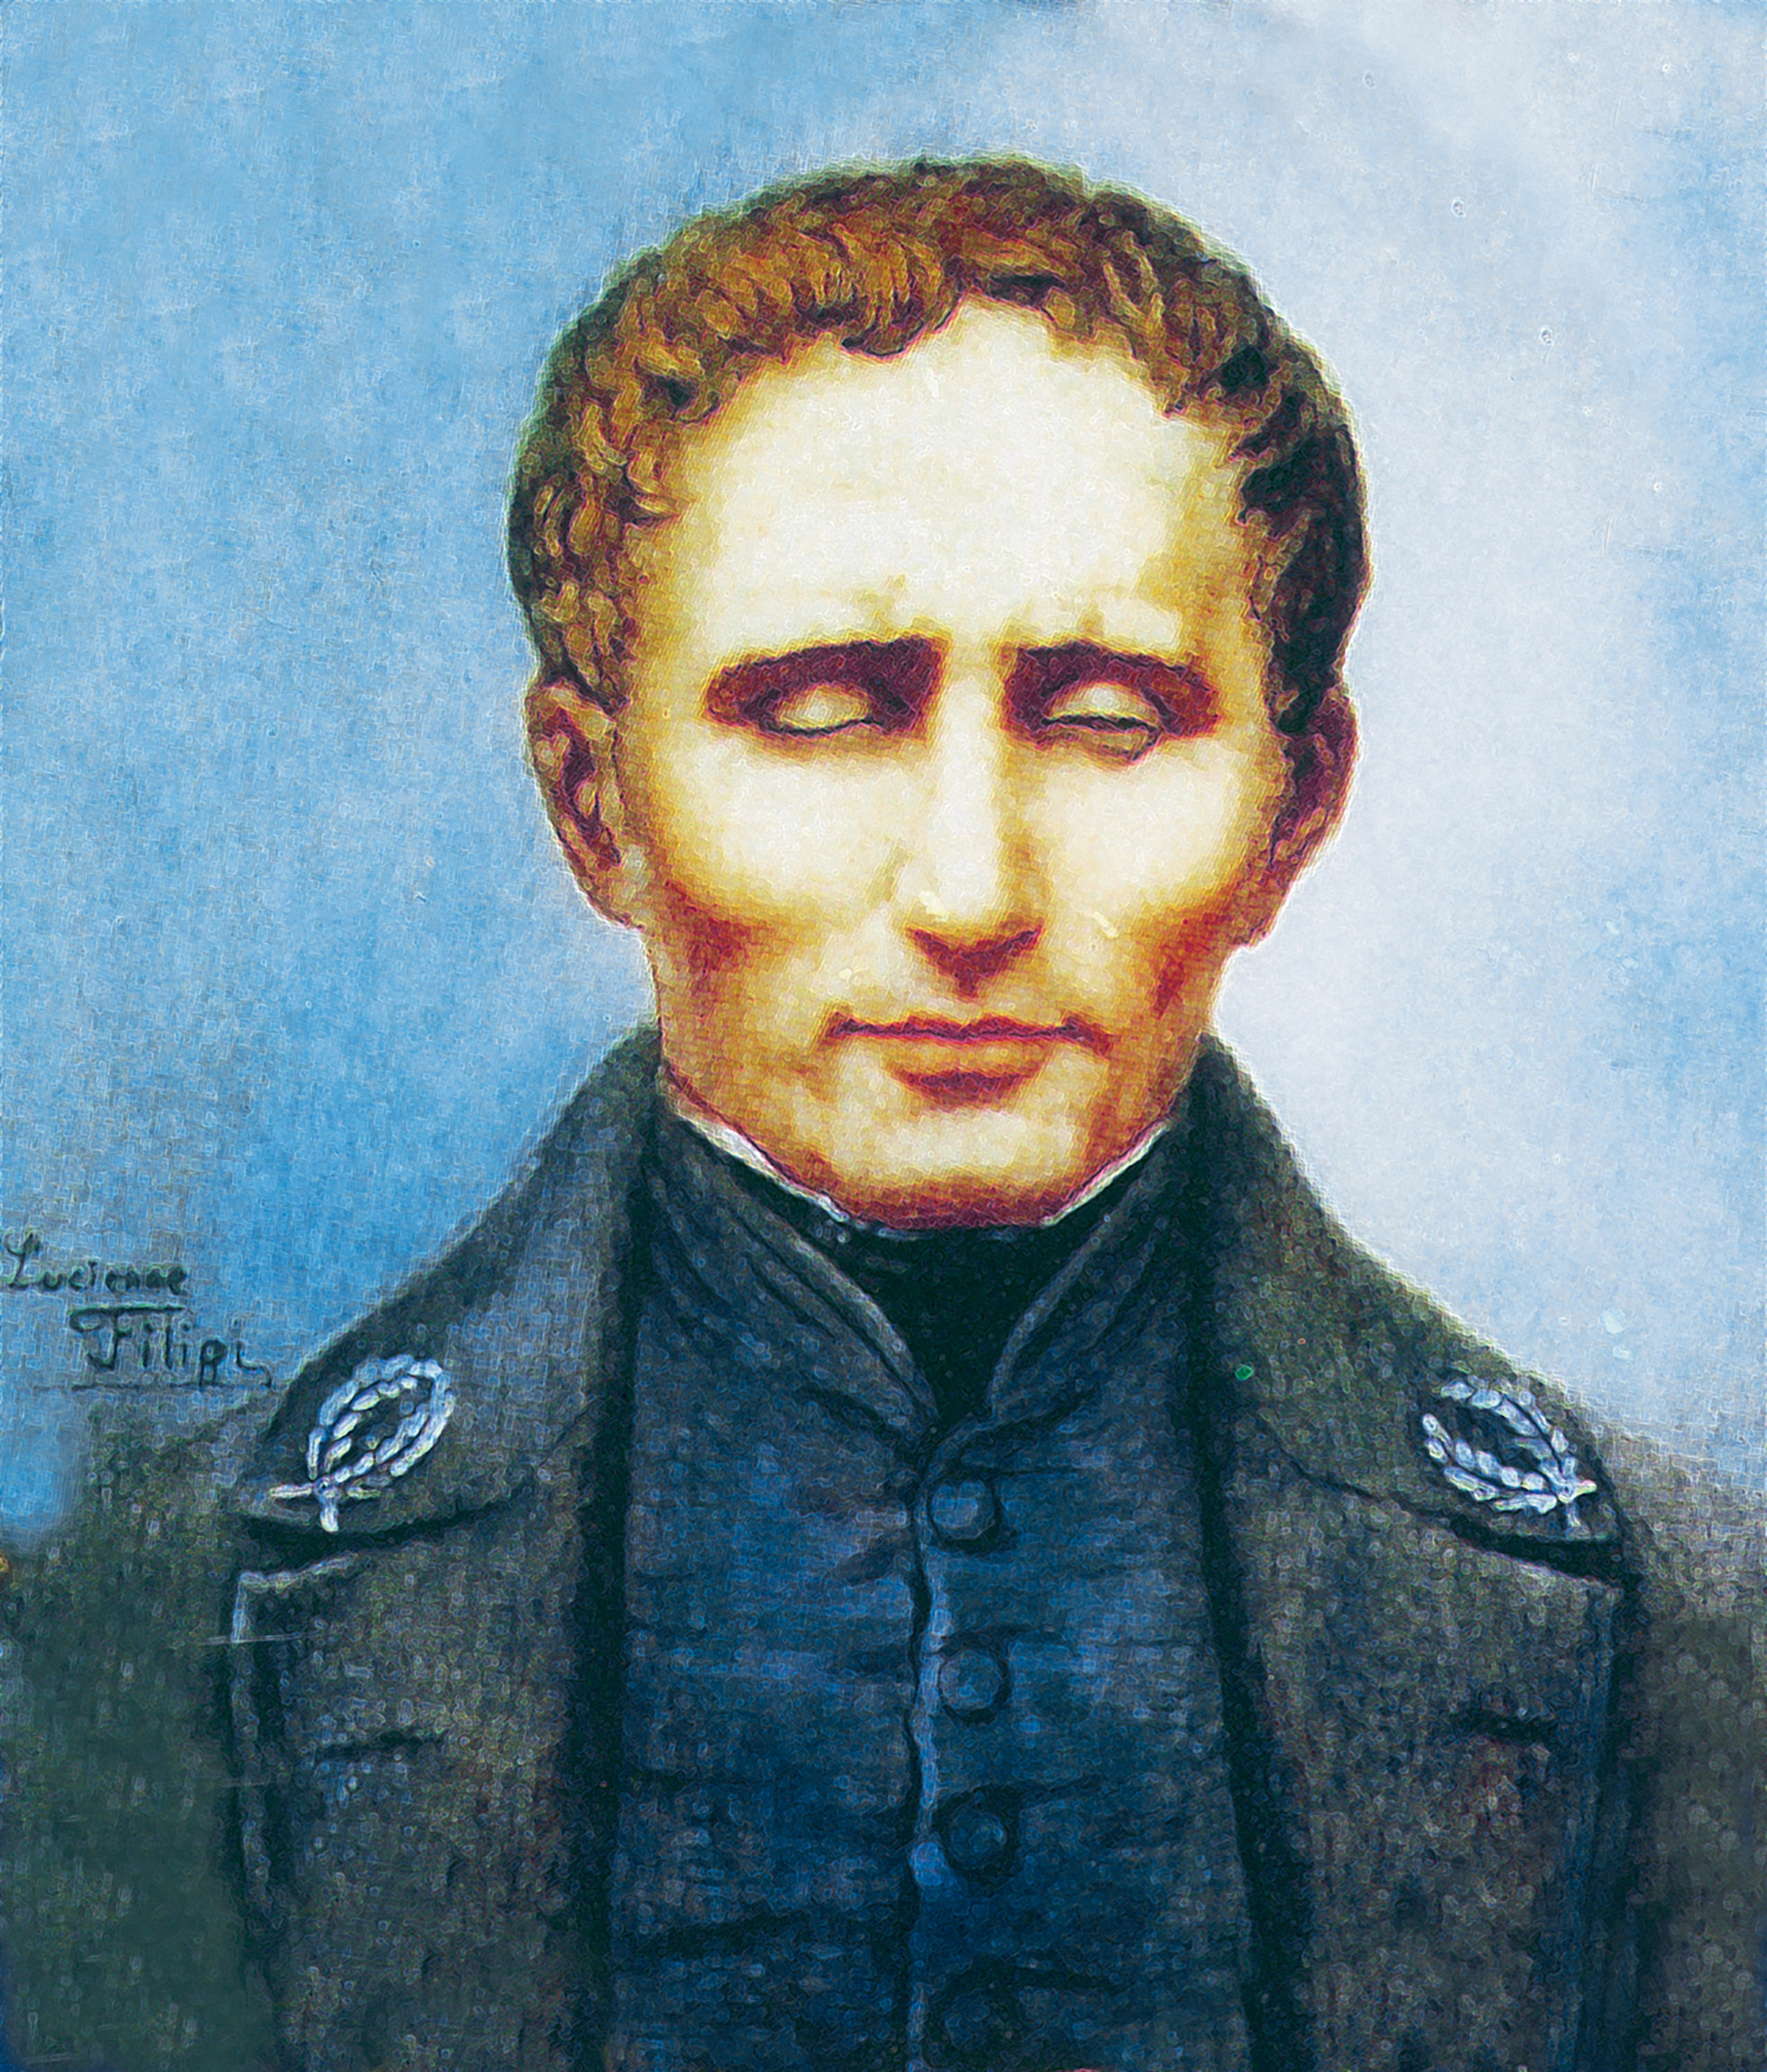 Louis Braille es el creador del sistema de lectoescritura para personas con discapacidad visual y no videntes que lleva su nombre.